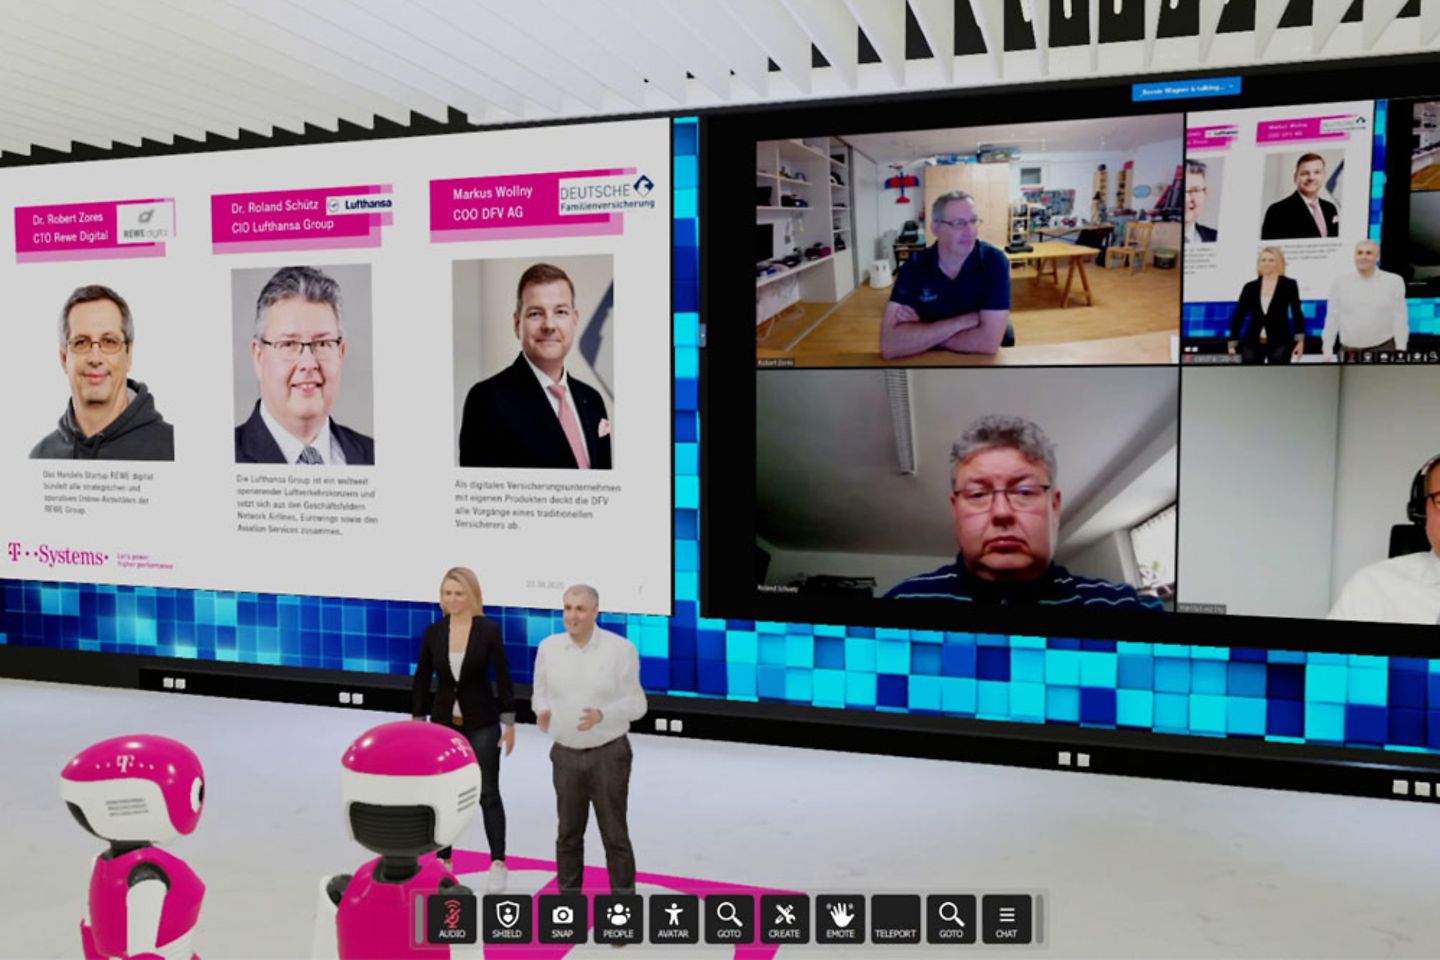 Videokonferenz in einem virtuellen Raum mit zwei Personen auf einem Bildschirm via Webcam und zwei virtuellen Moderatoren